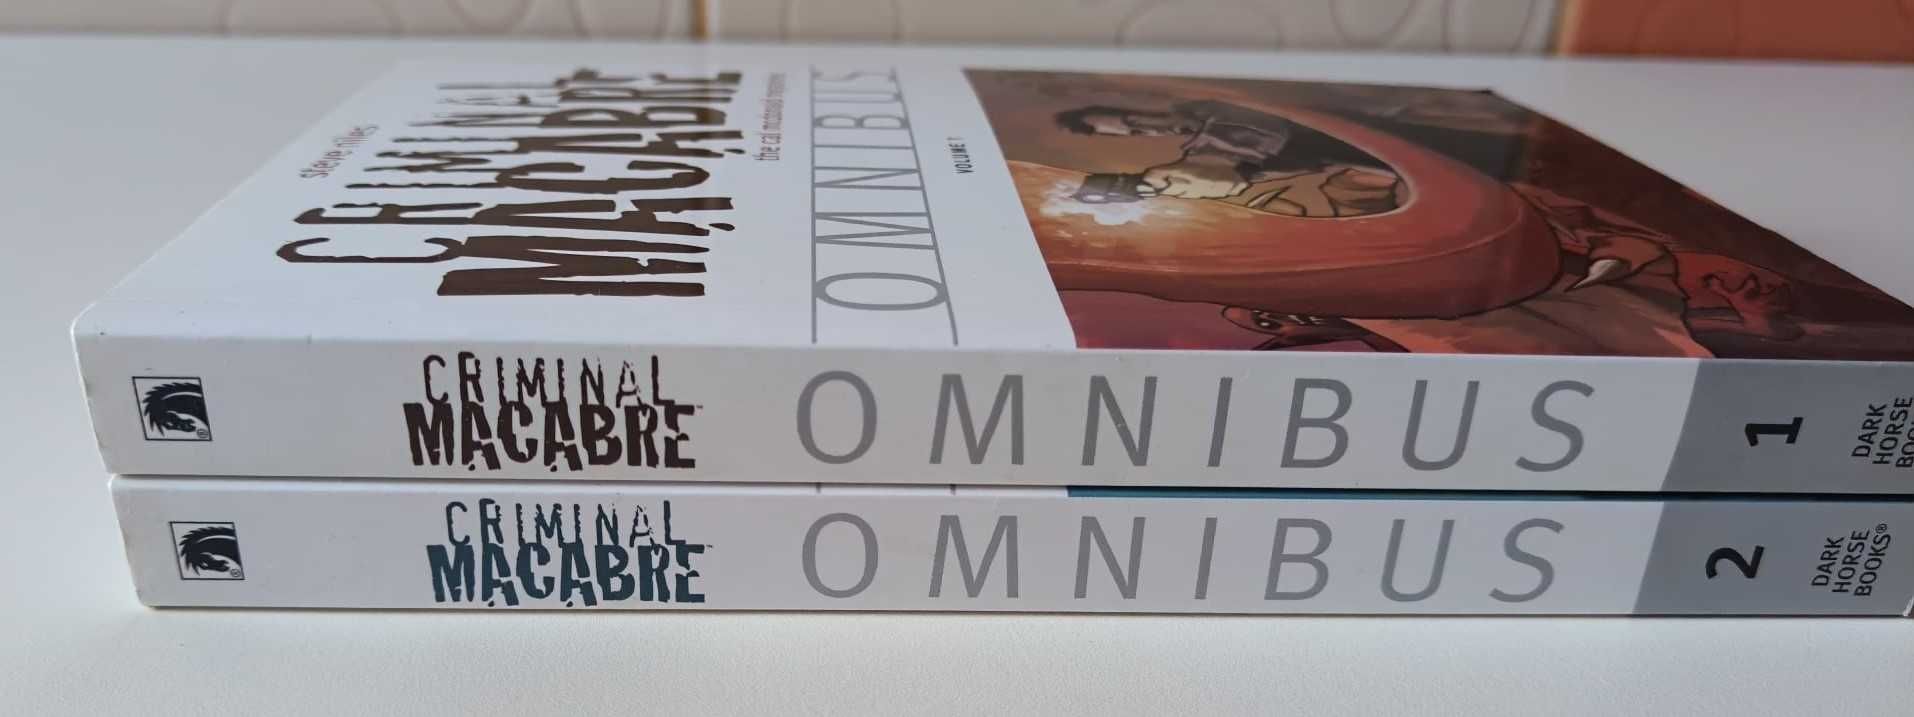 Criminal Macabre Omnibus - 2 volume în stare foarte bună